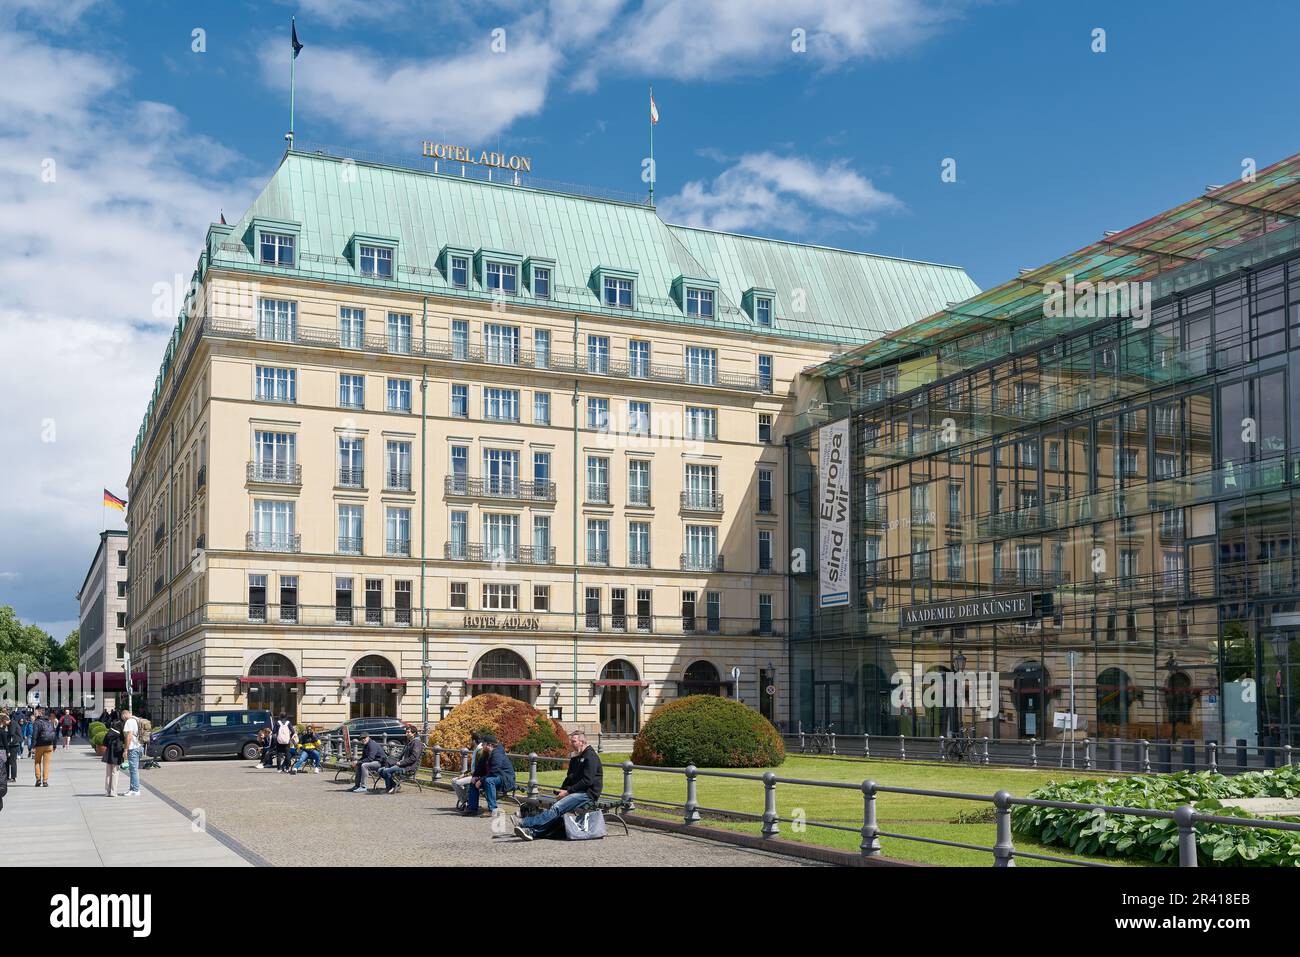 Das berühmte Hotel Adlon ist eine Unterkunft für Staatsgäste und Berühmtheiten am Pariser Platz in Berlin Stockfoto